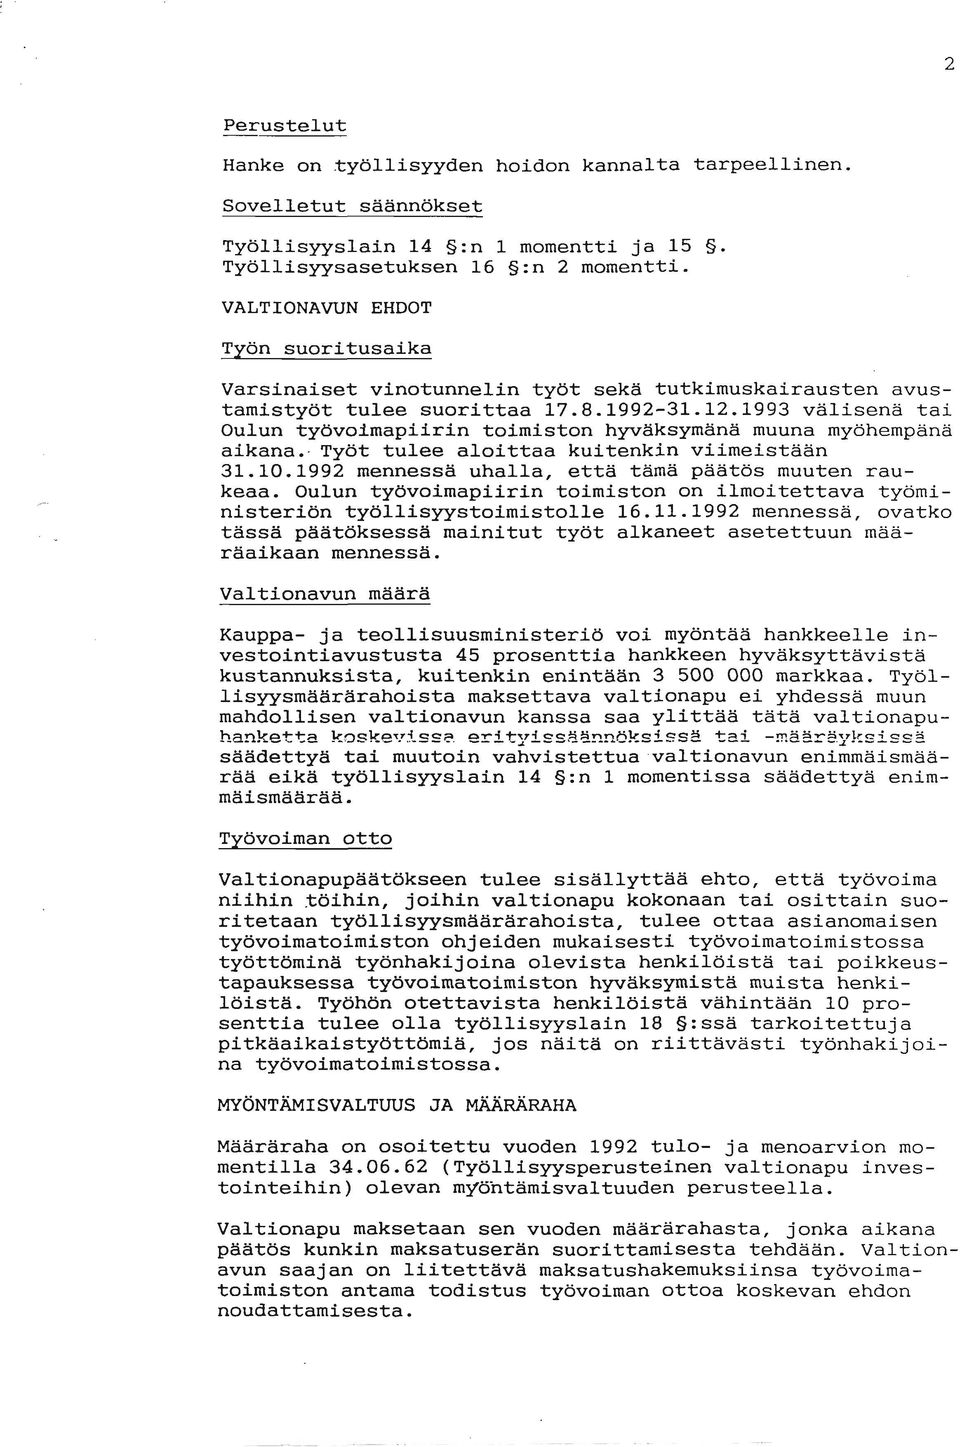 1993 välisenä tai Oulun työvoimapiirin toimiston hyvaksymana muuna myöhempäna aikana.. Työt tulee aloittaa kuitenkin viimeistään 31.10.1992 mennessa uhalla, että tämä päätös muuten raukeaa.